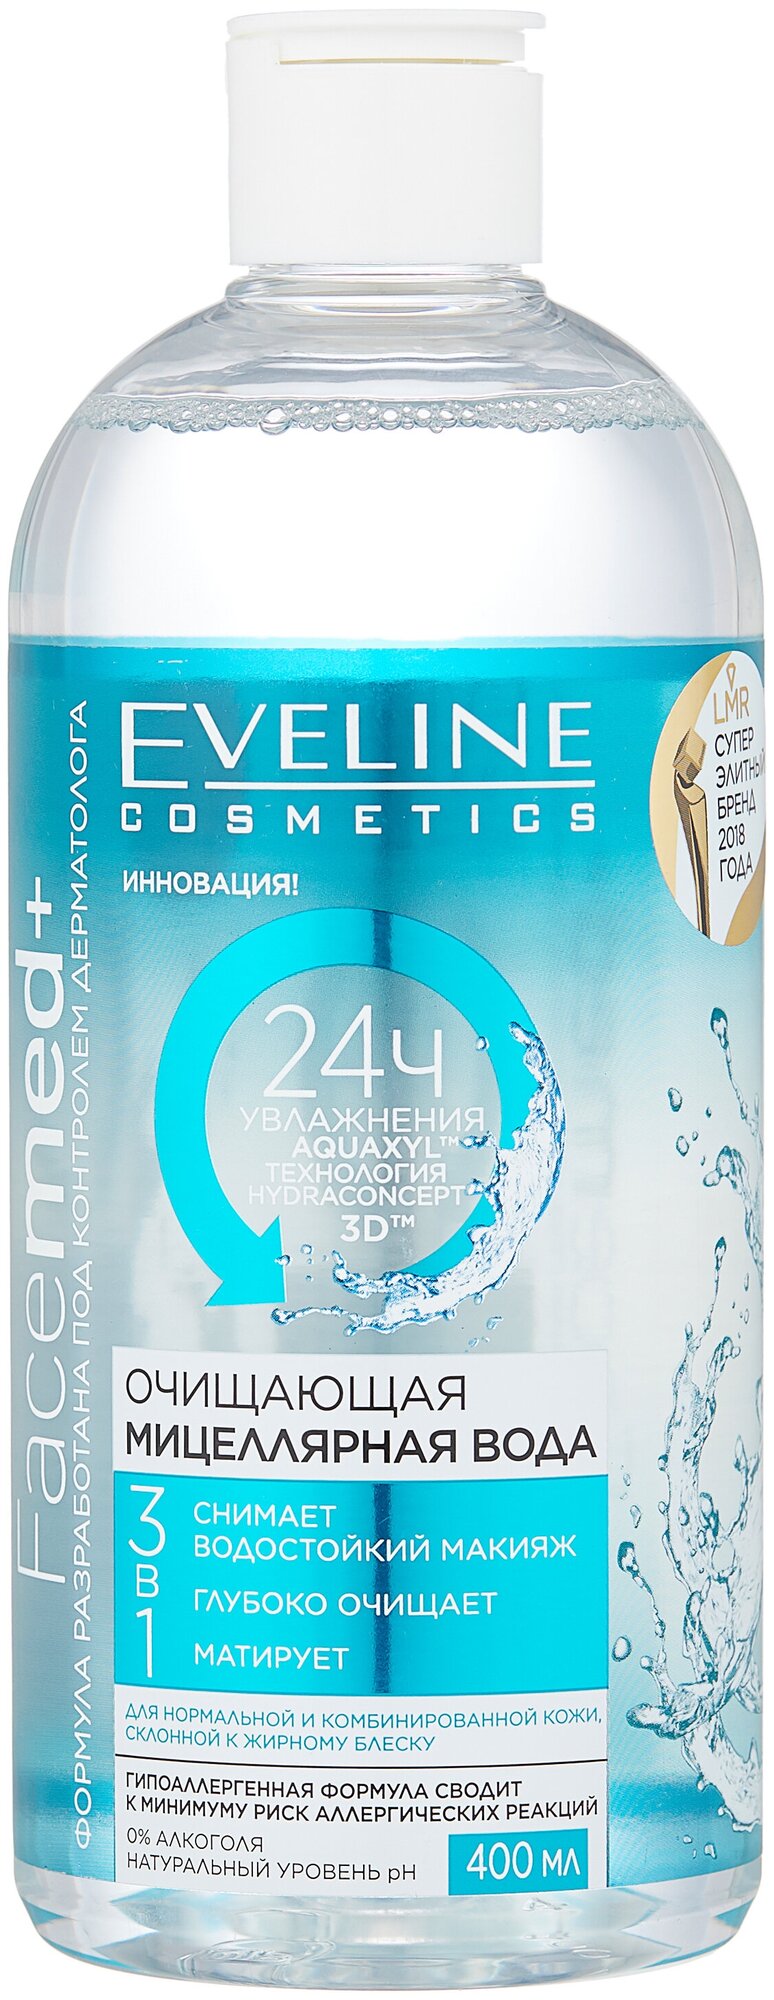 Eveline Cosmetics Facemed+ мицеллярная вода очищающая 3 в 1